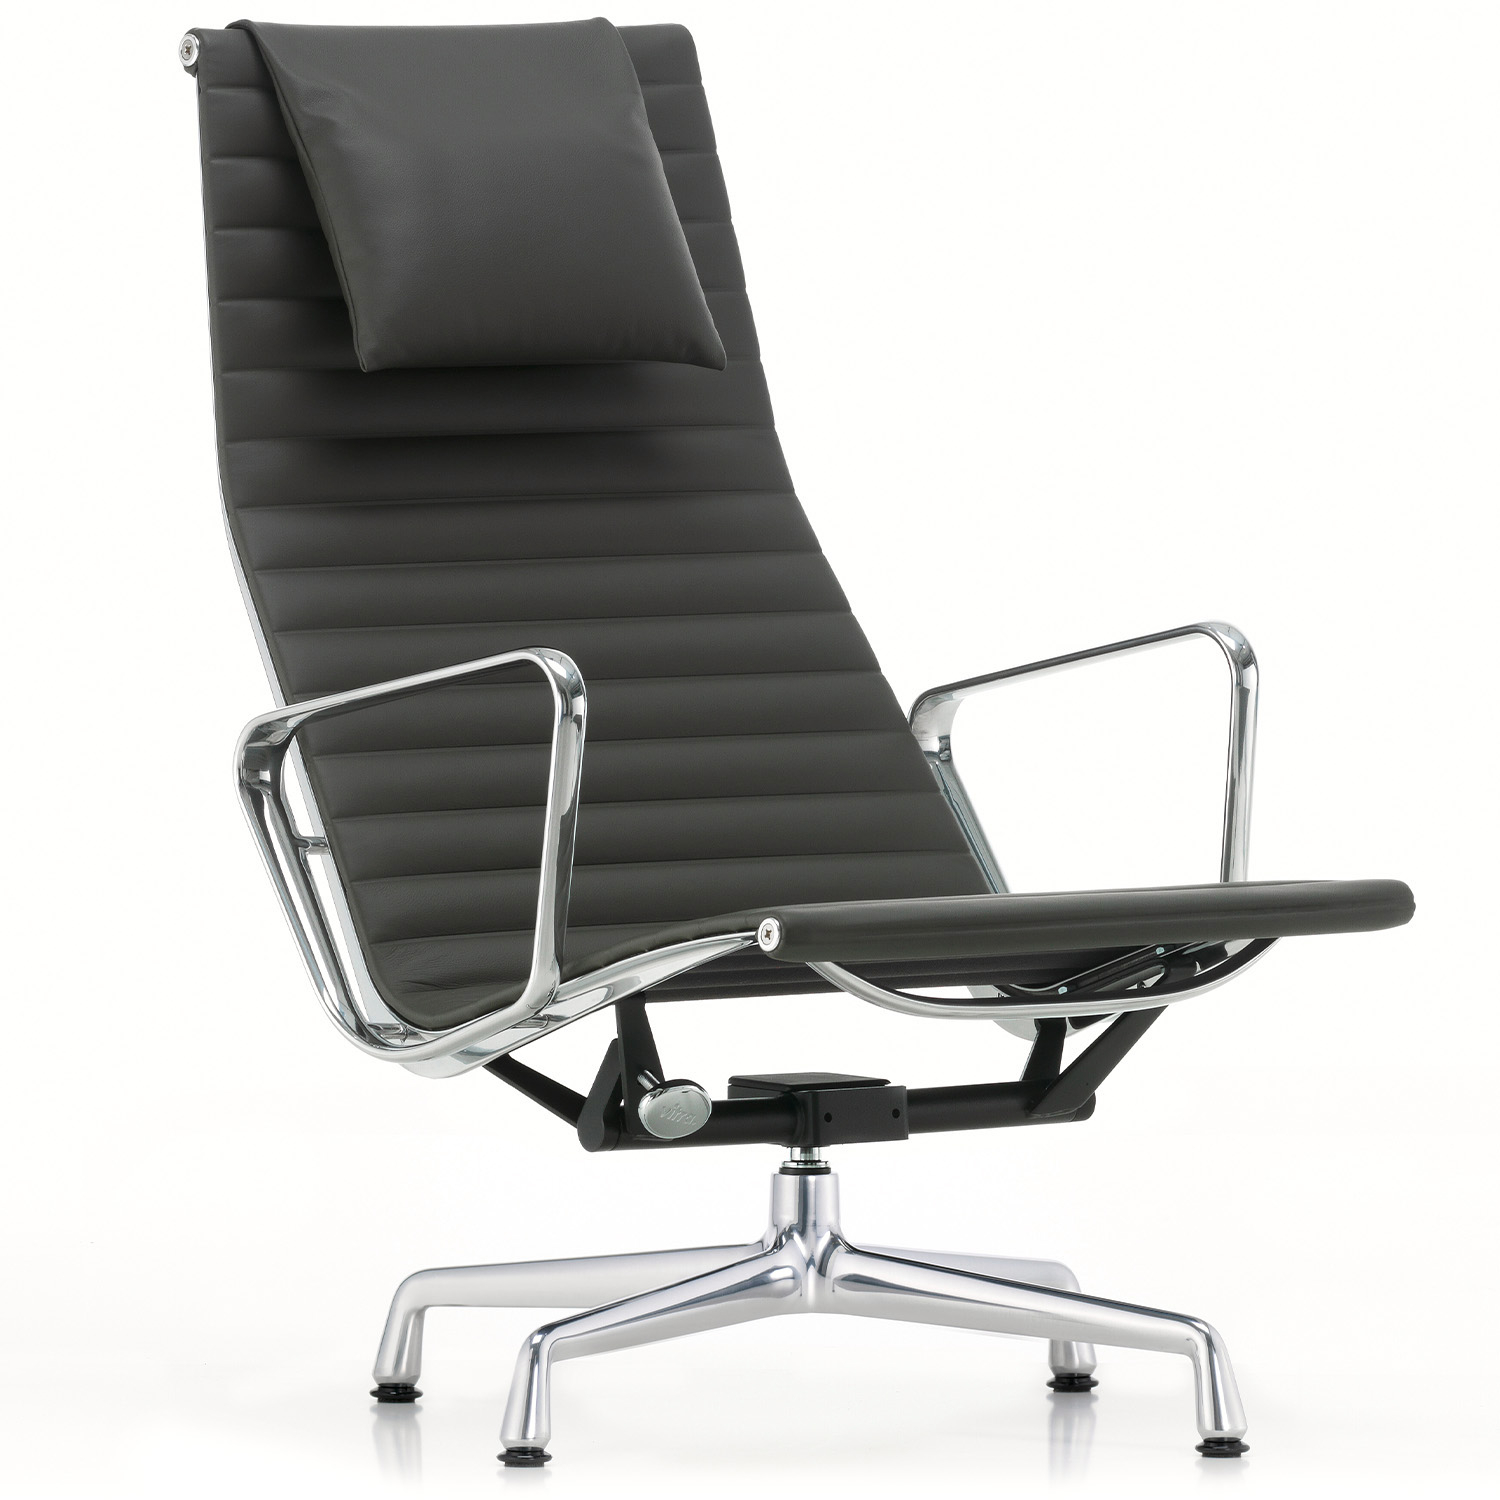 Vitra designová křesla Aluminium Chair EA 124